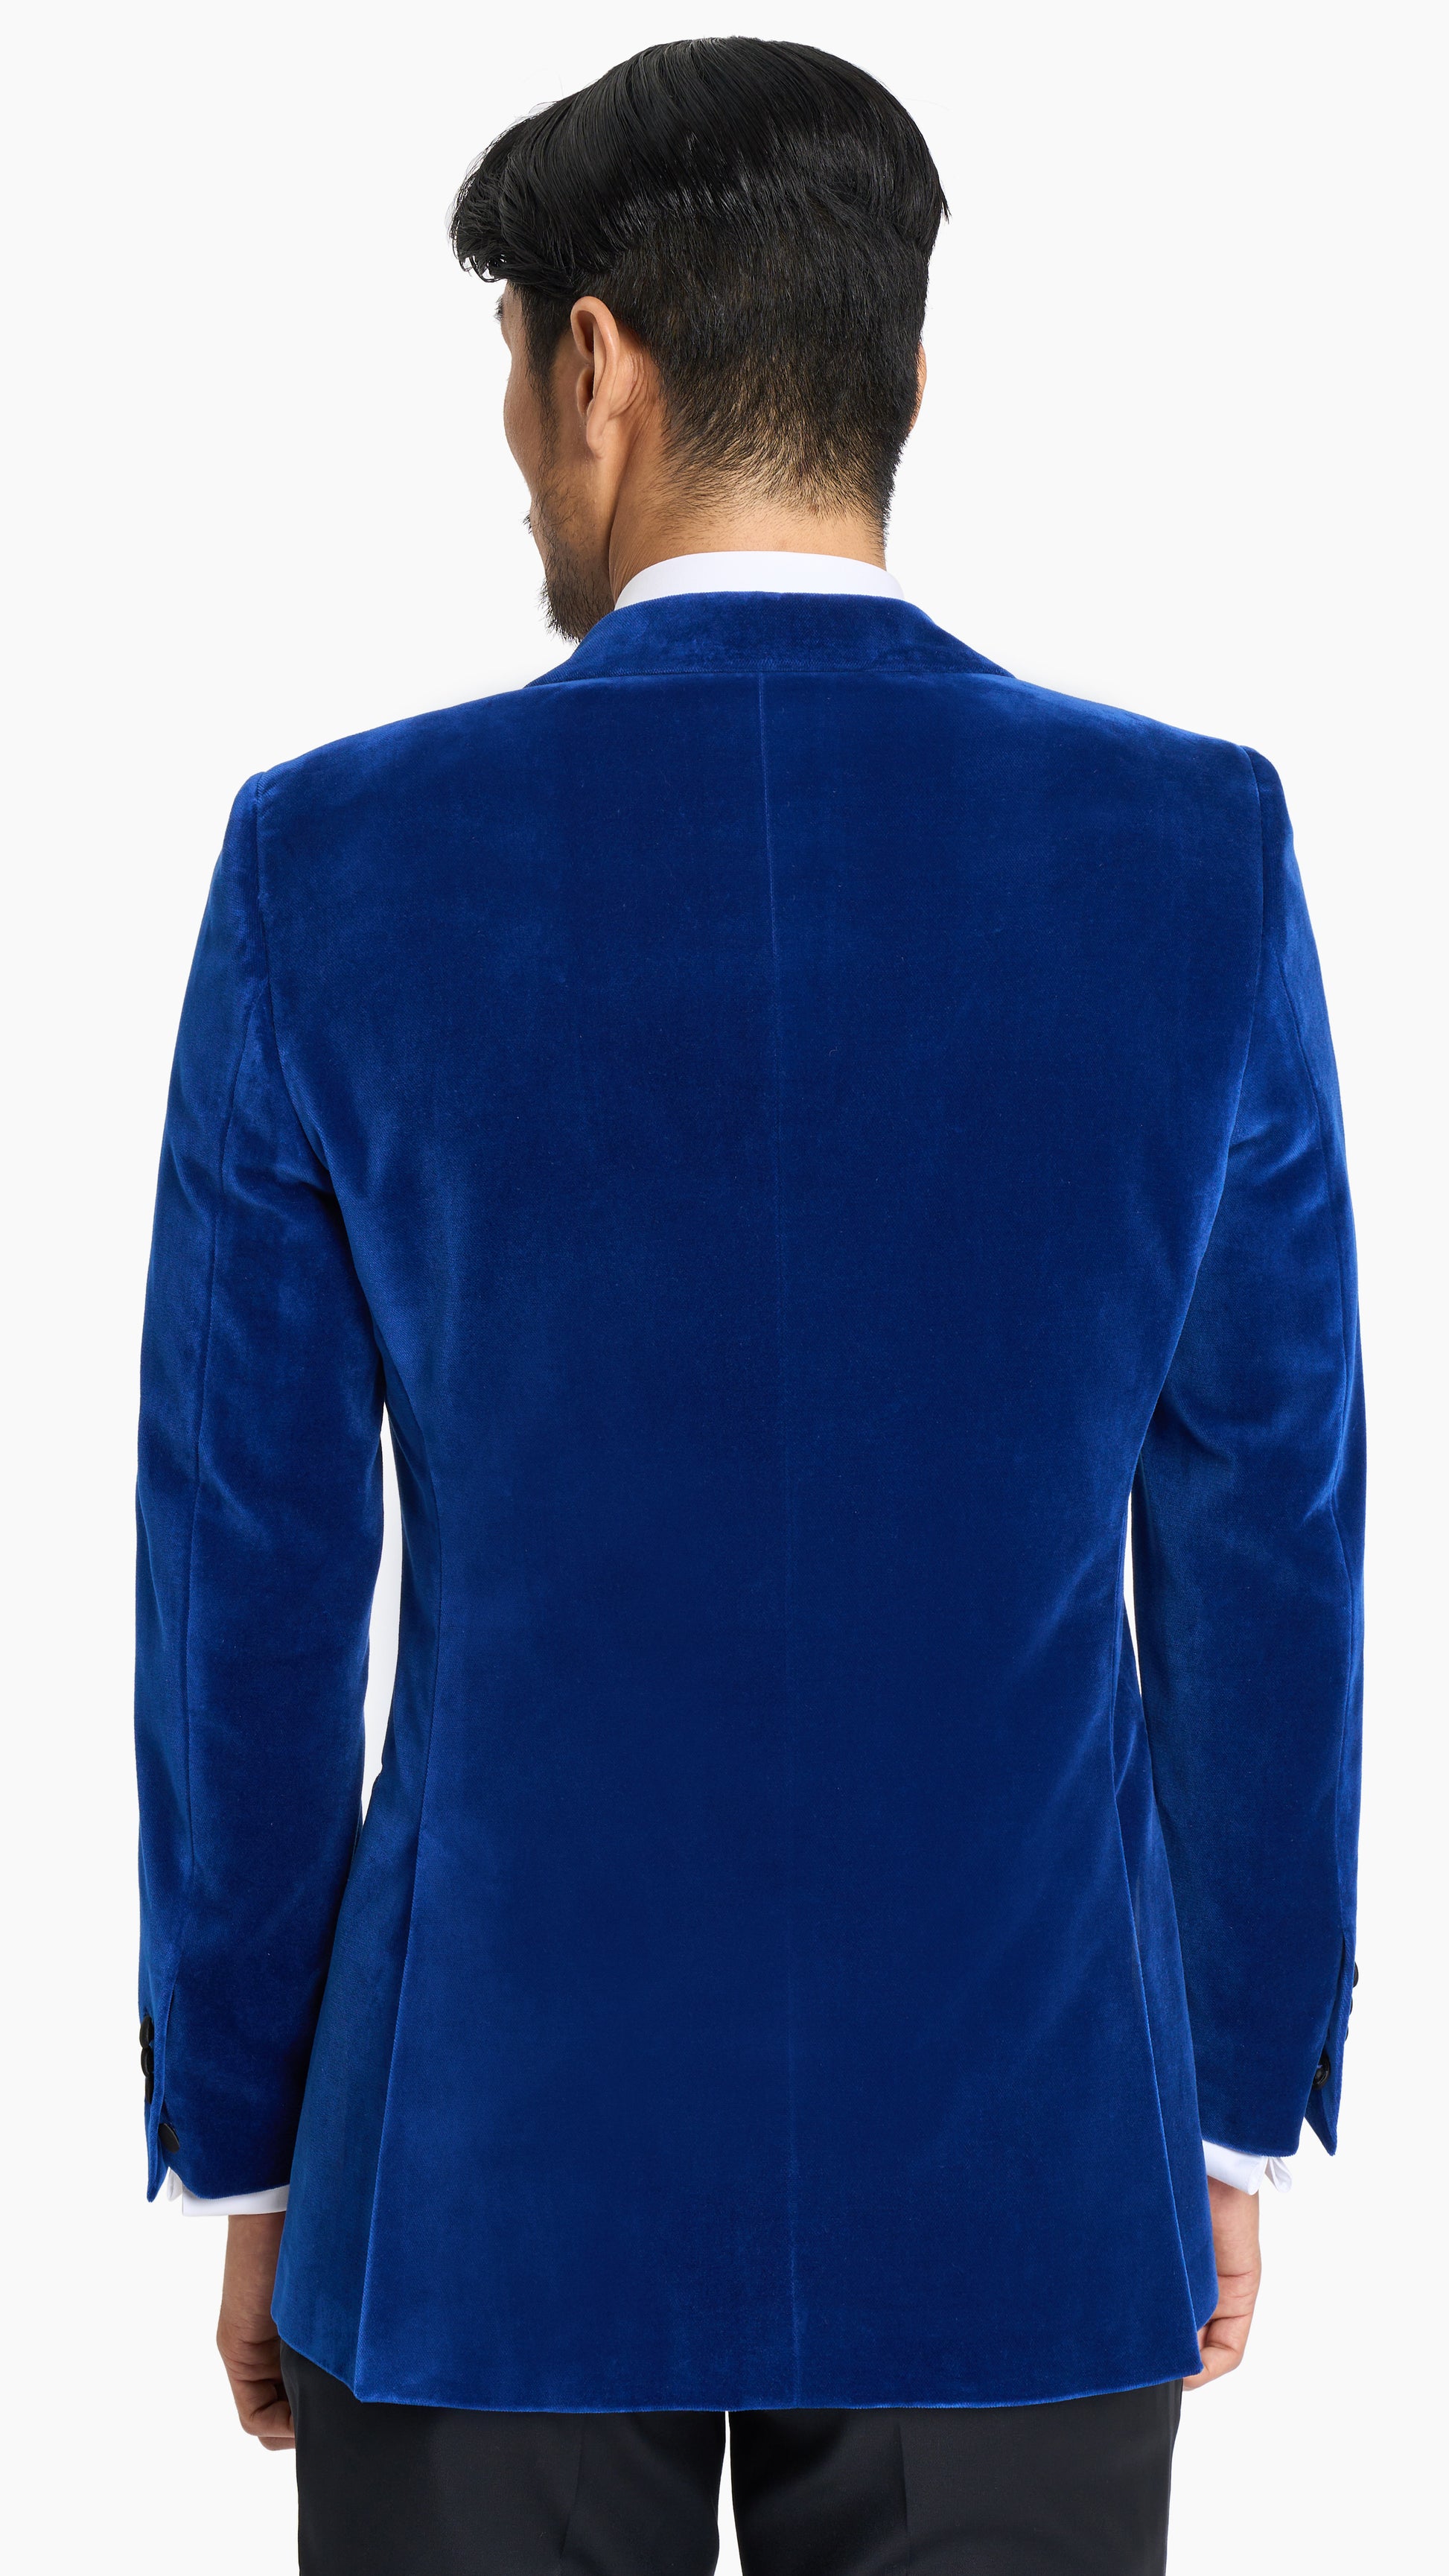 Saphire Blue Velvet Tuxedo Jacket